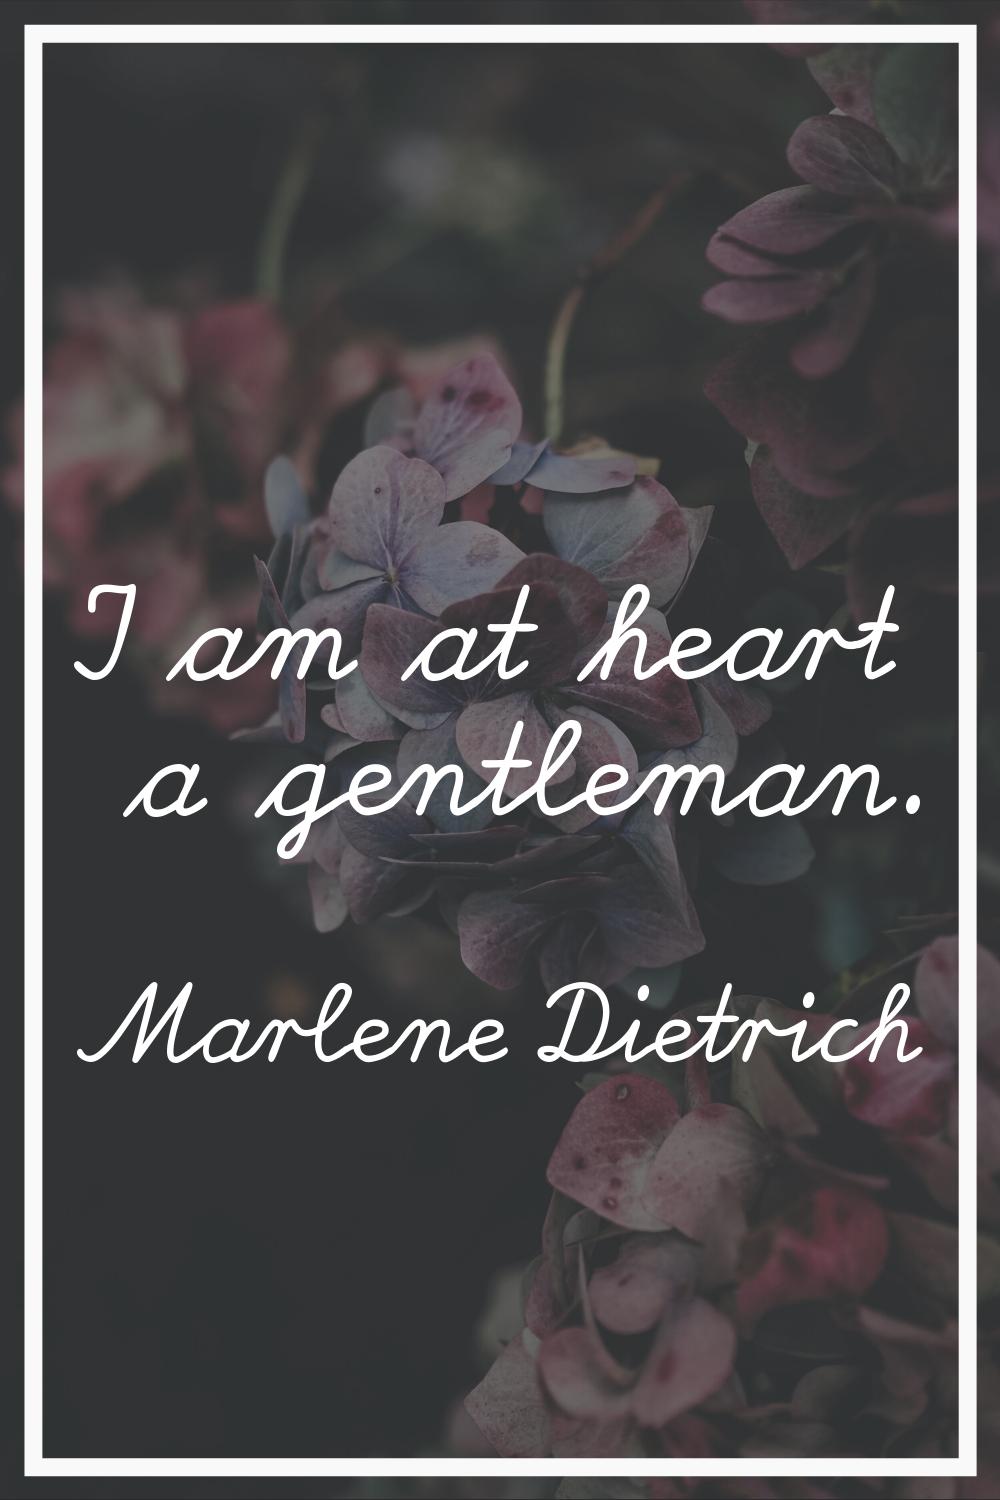 I am at heart a gentleman.